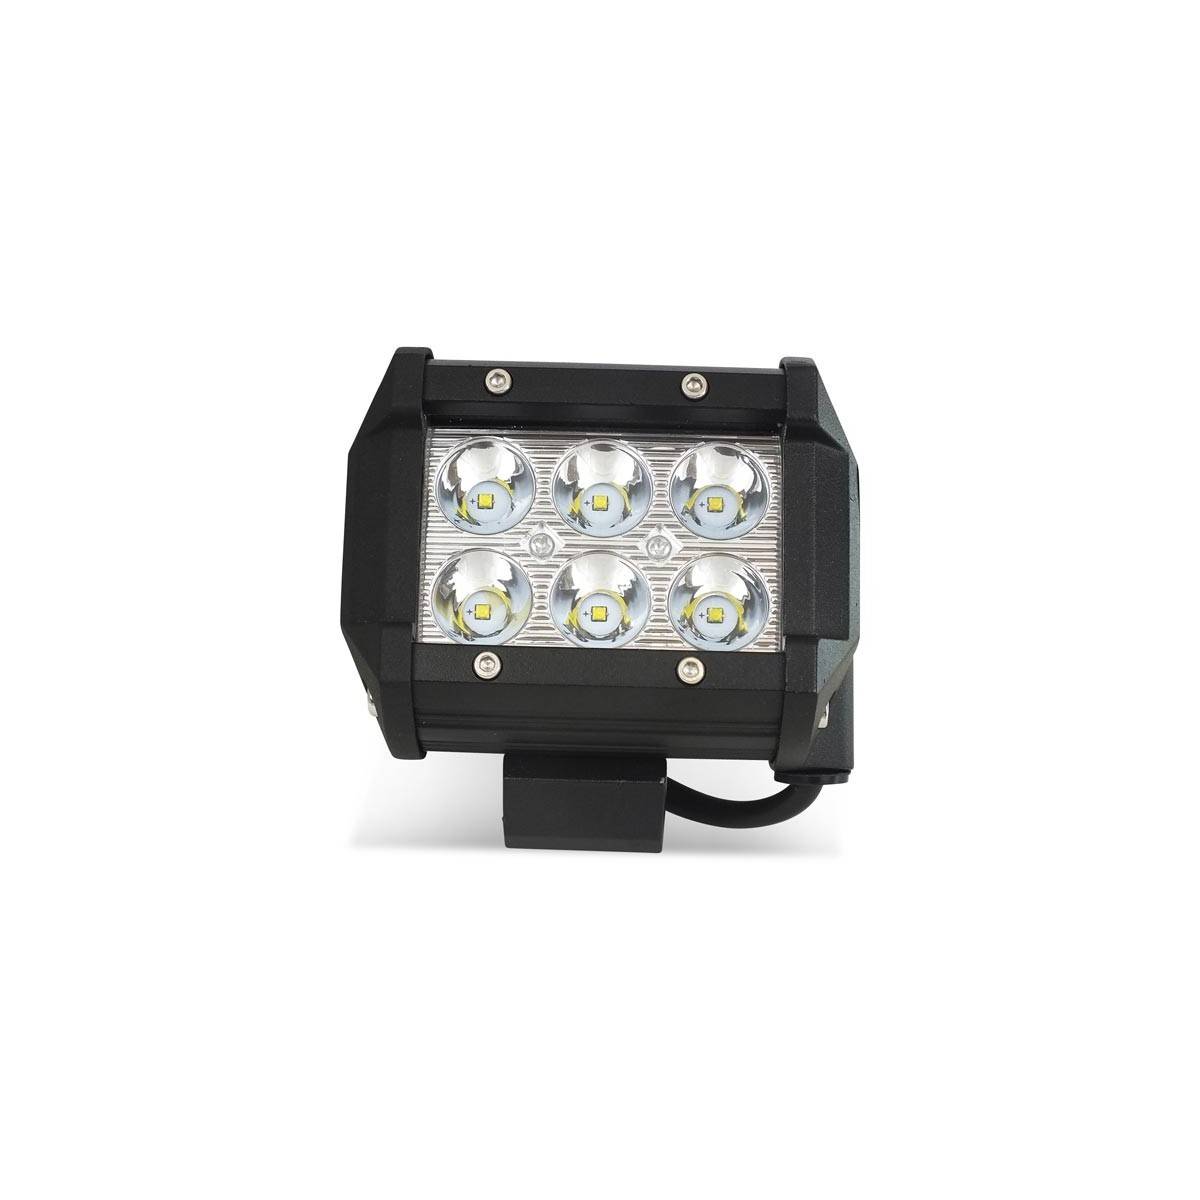 LED-Scheinwerfer für Maschinen-, Automobil- und Nautikanwendungen 18W - 30º.